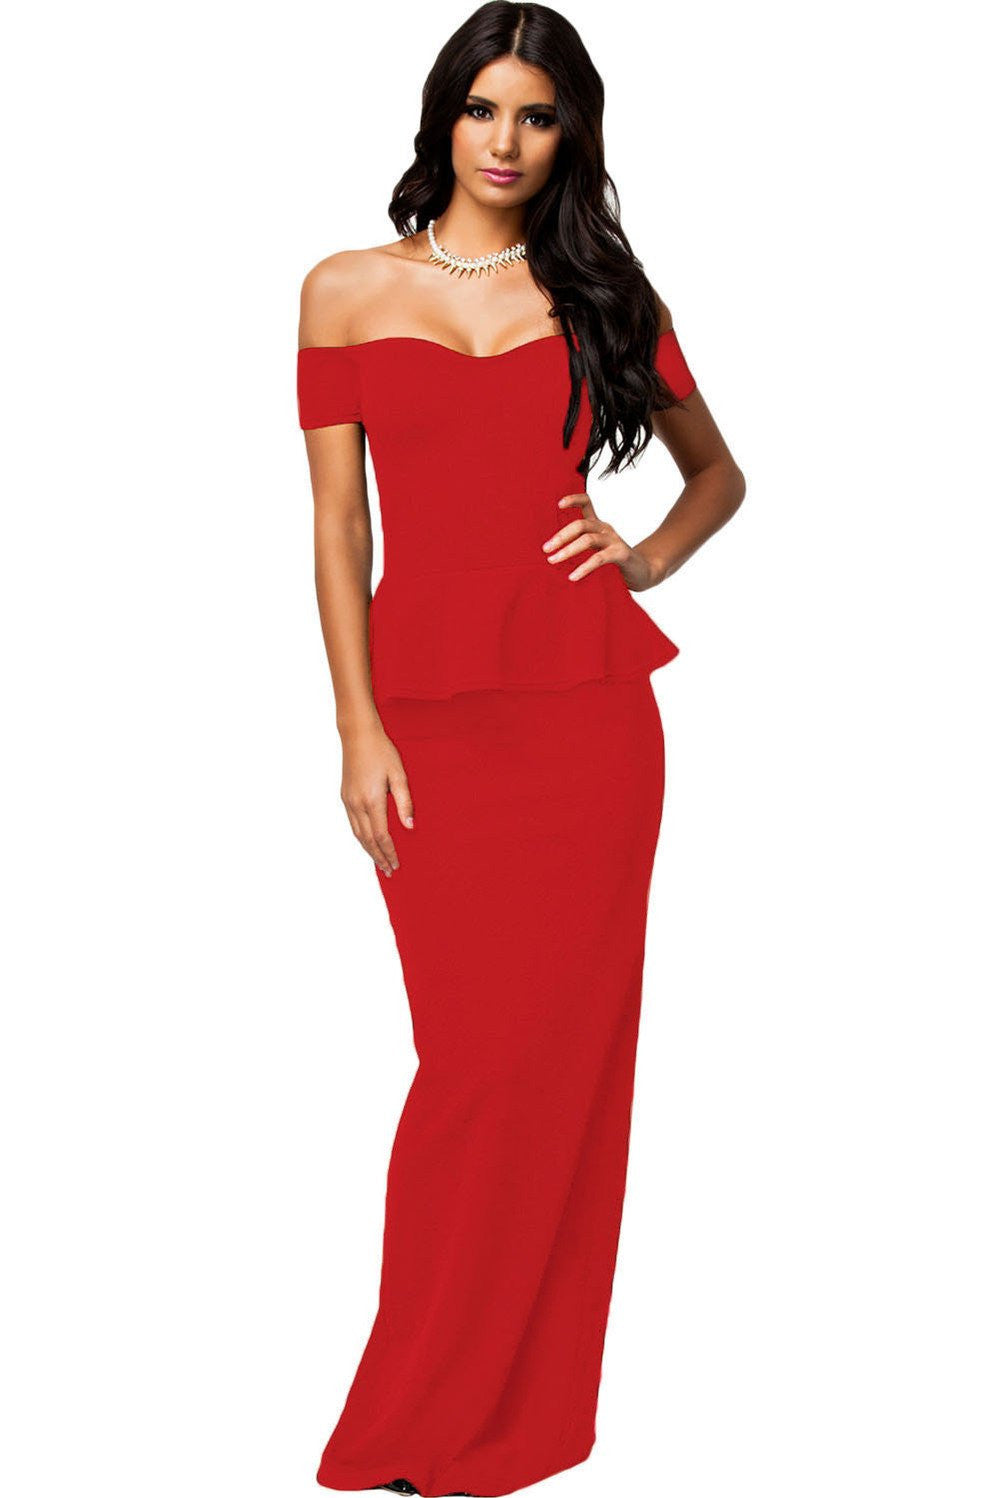 Women Dress 3 Colors Peplum Dress With Off shoulder Maxi Dress LC6244 plus size M-XXL Party Dress Vestidos